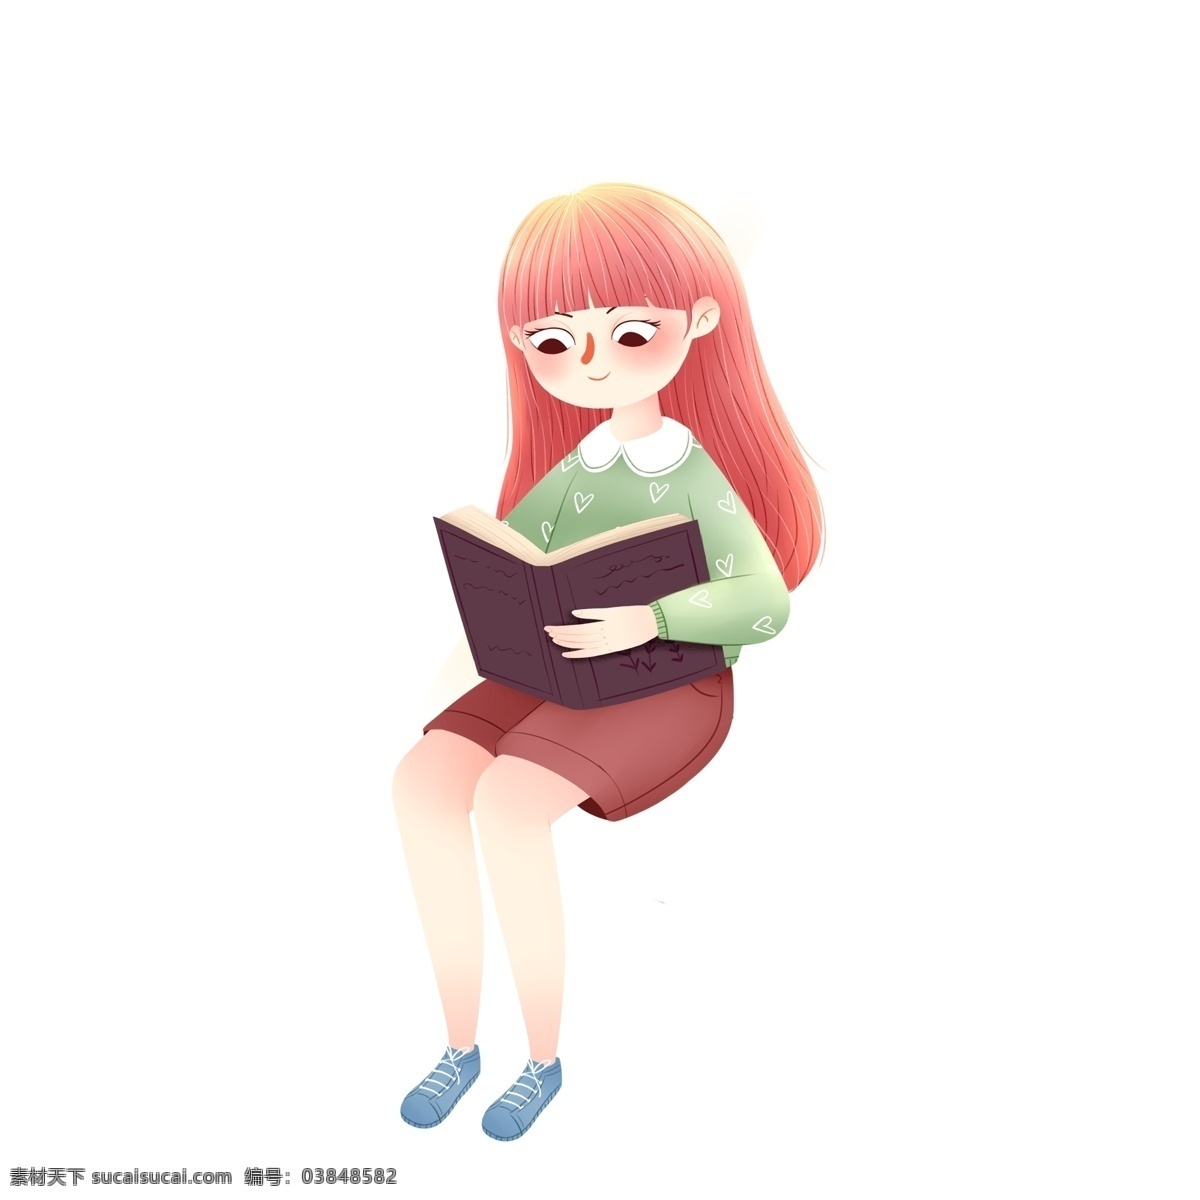 手绘 看书 女孩 小 清晰 文艺 清新 人物 读书 学习 学生 文艺少女 人物素材 书本 阅读